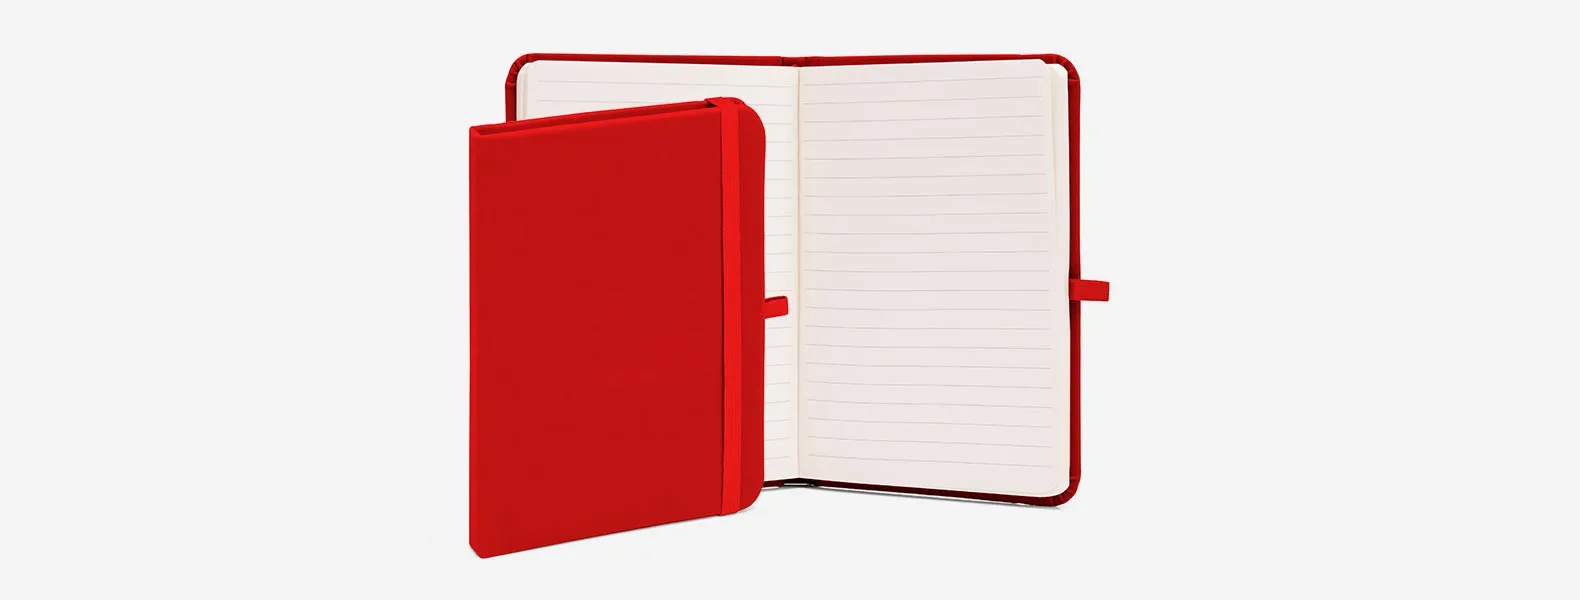 Caderno para anotações vermelho com capa dura. Conta com 80 folhas pautadas, porta caneta e elástico para fechamento Gramatura da folha de 70 g/m2